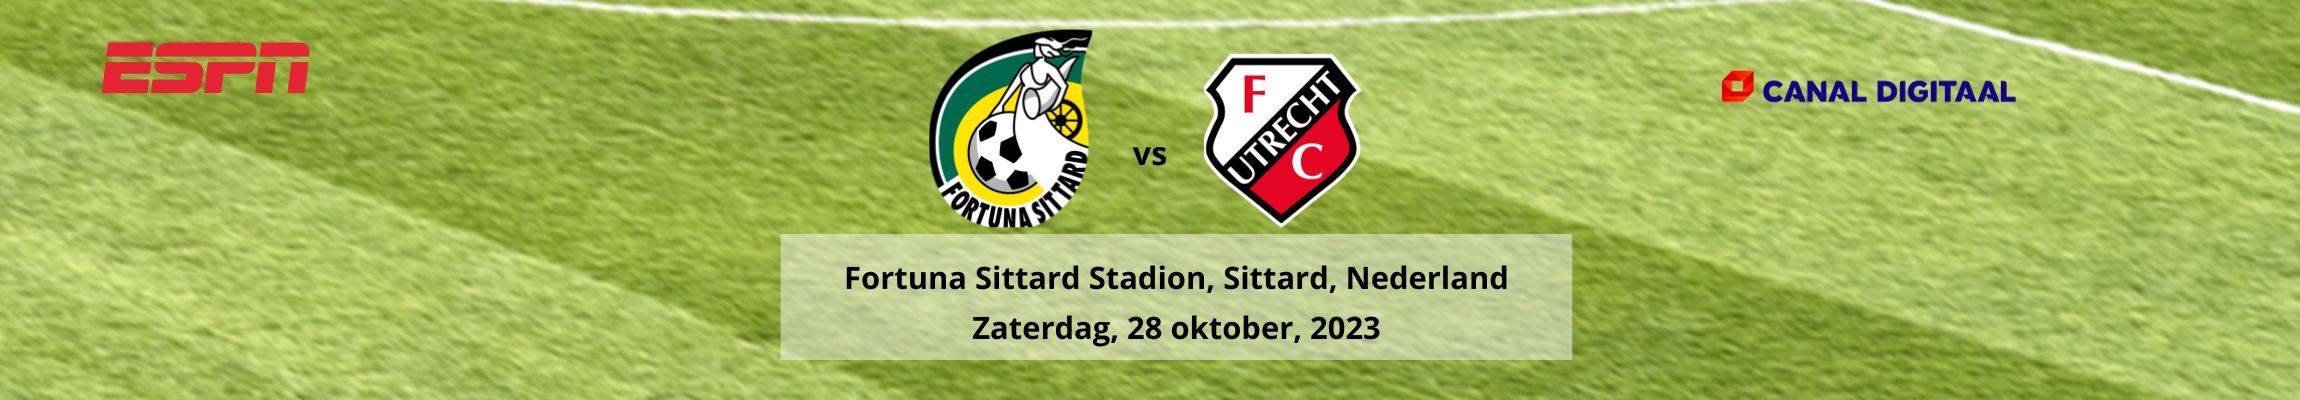 Fortuna Sittard vs FC Utrecht